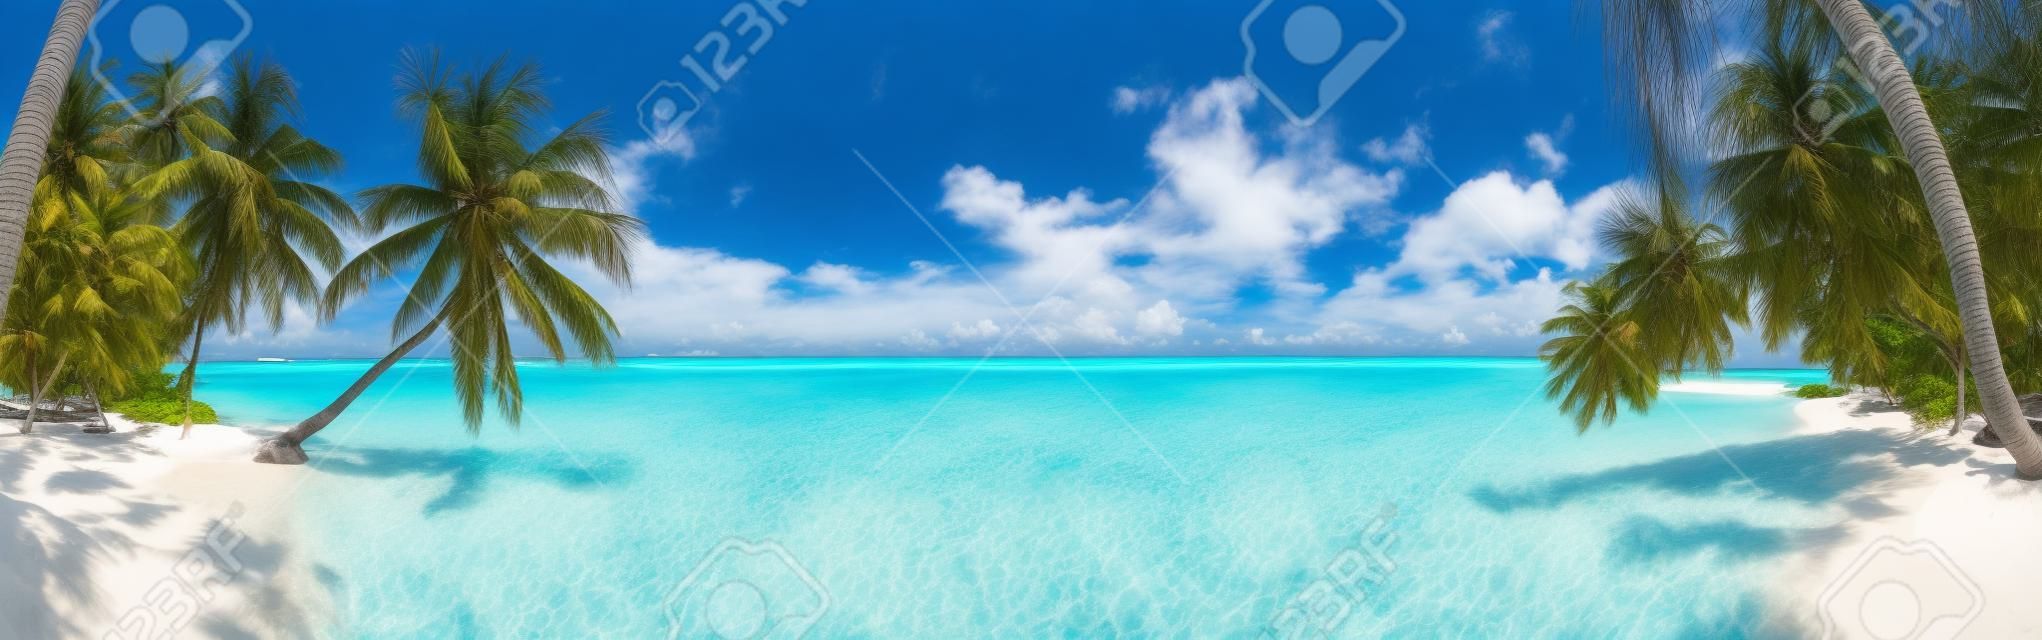 Panorama de praia nas Maldivas com céu azul, palmeiras e água azul-turquesa